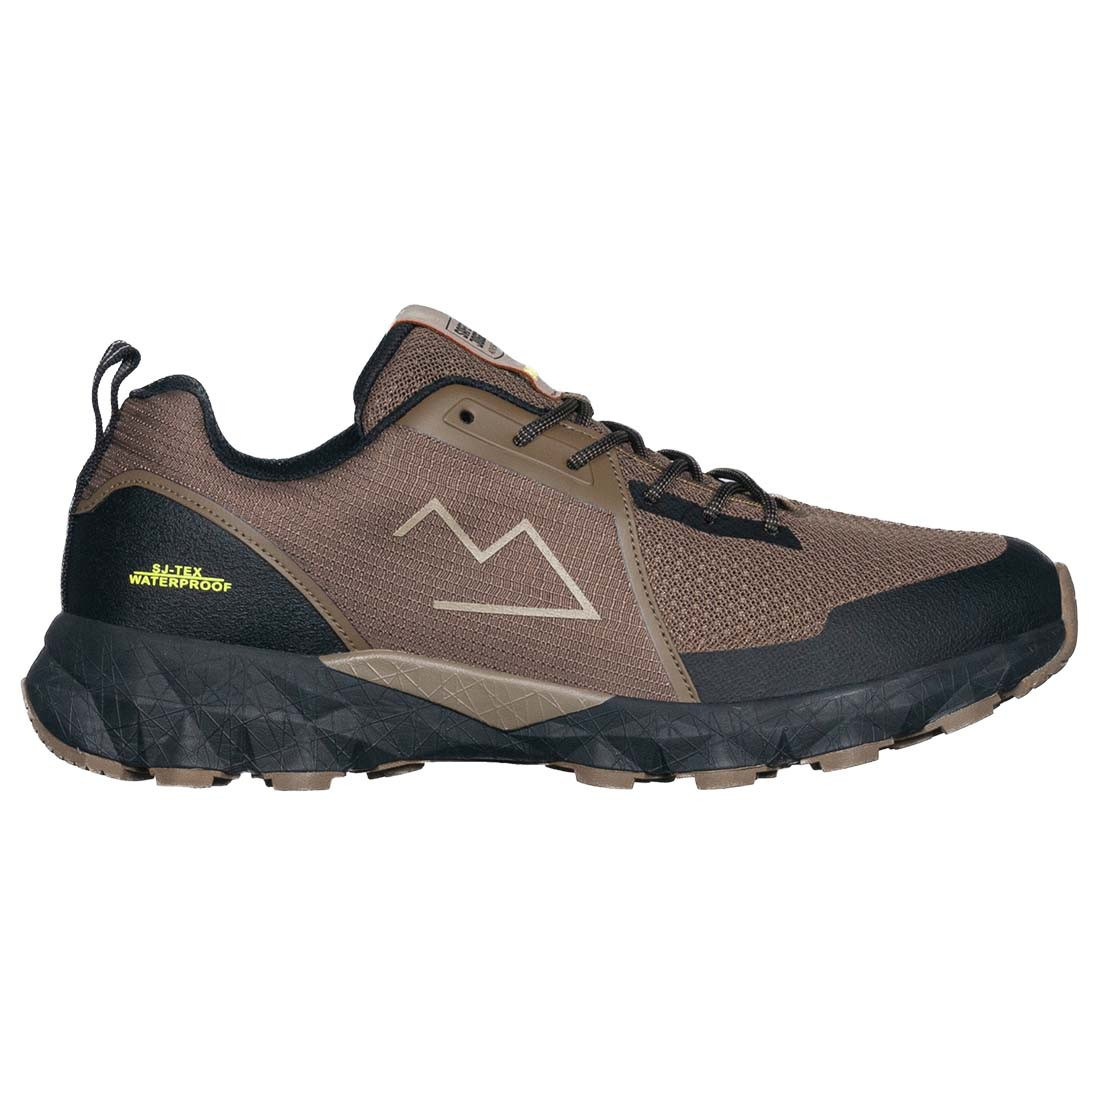 TAMAN Versatile and waterproof trail shoe - Footwear